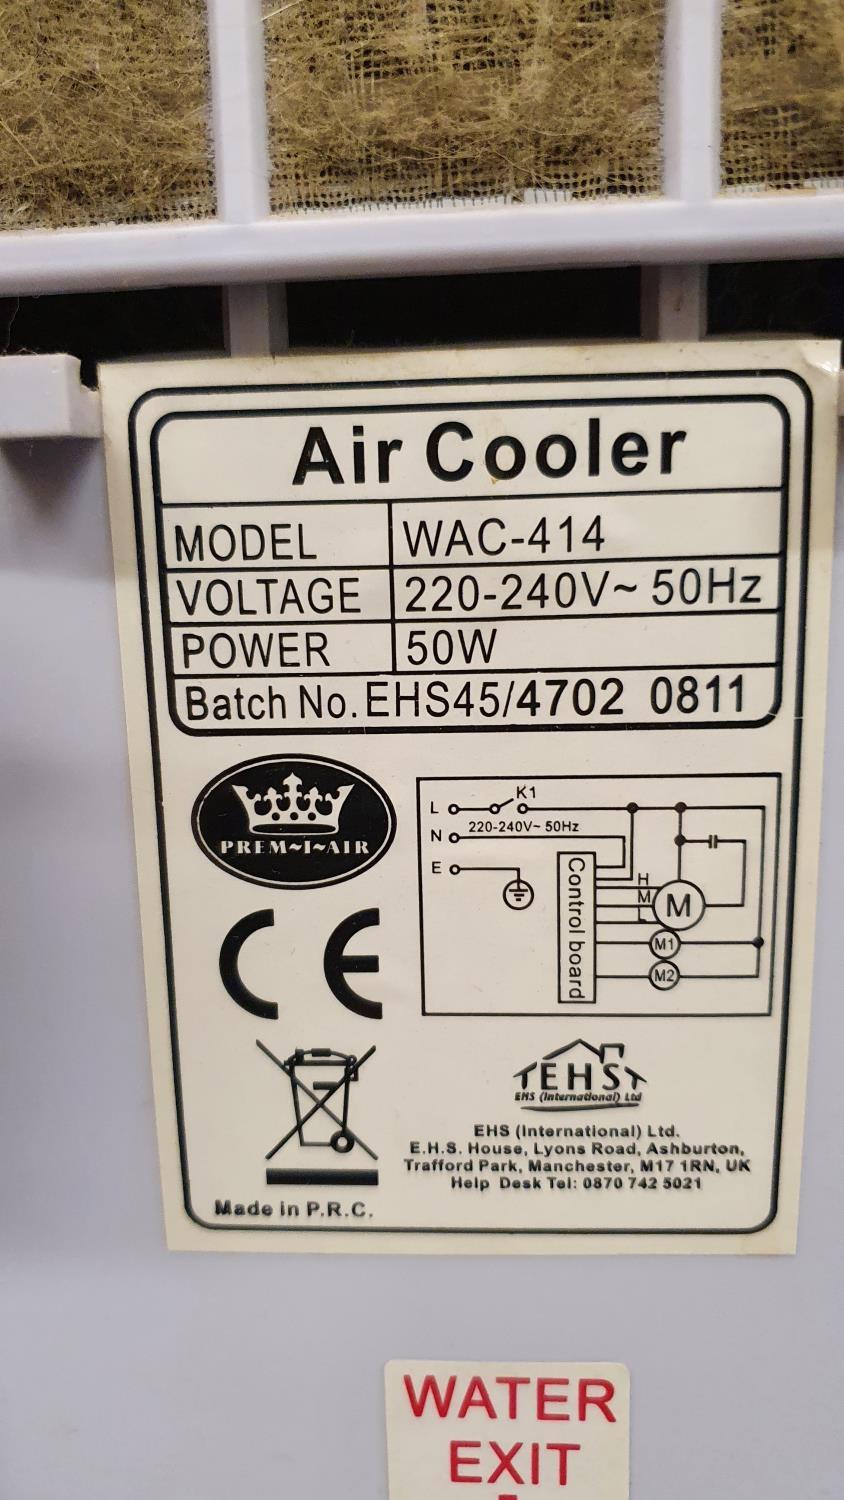 A Prem I Air air cooler, model WAC 414. - Image 2 of 2